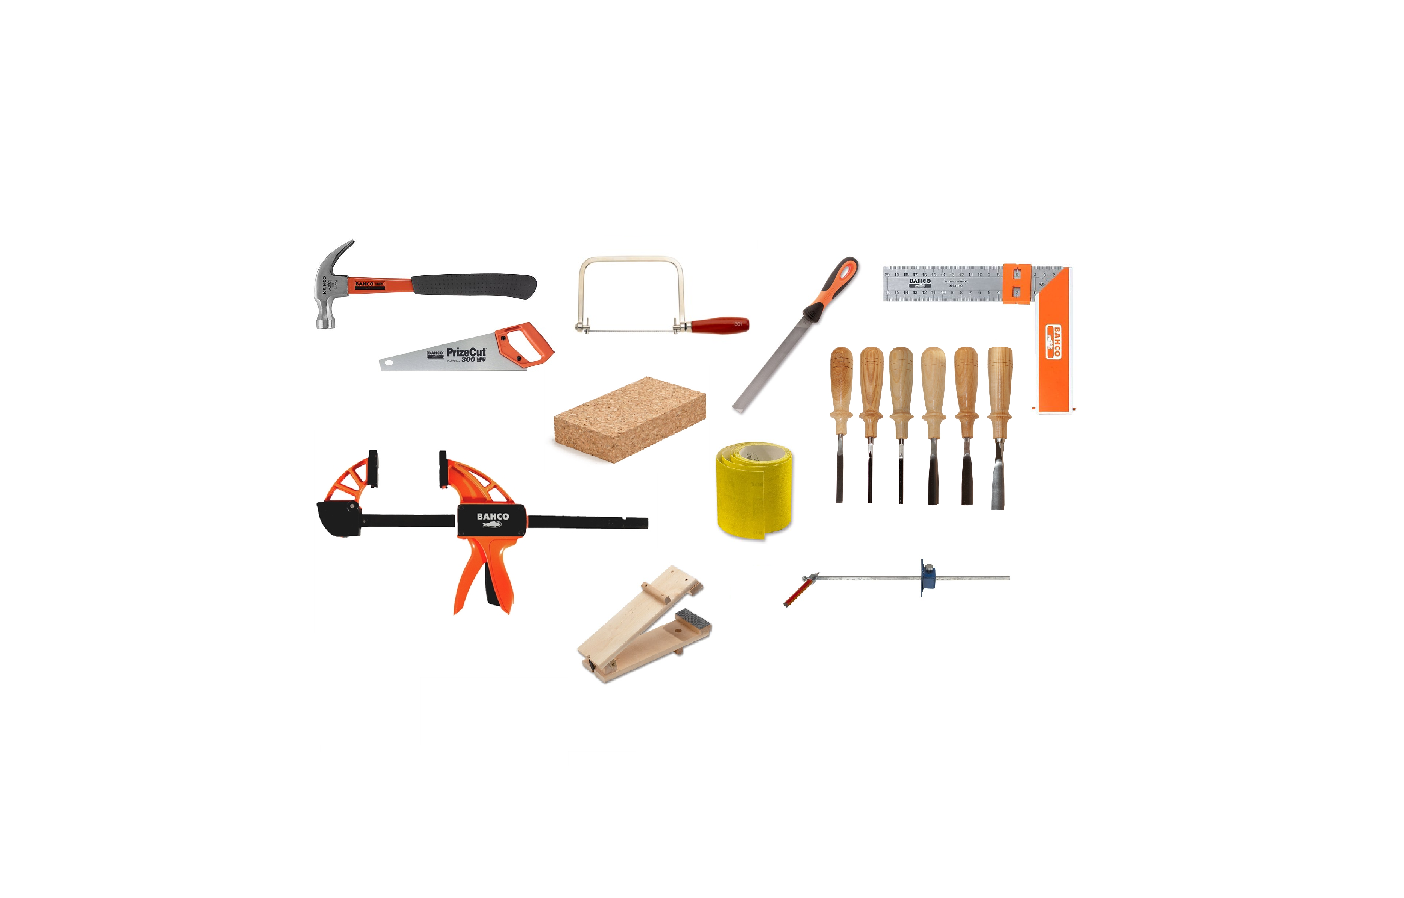 Spara pengar genom att välja vårt verktygspaket, samlat med allt du behöver för en komplett träslöjdsal.